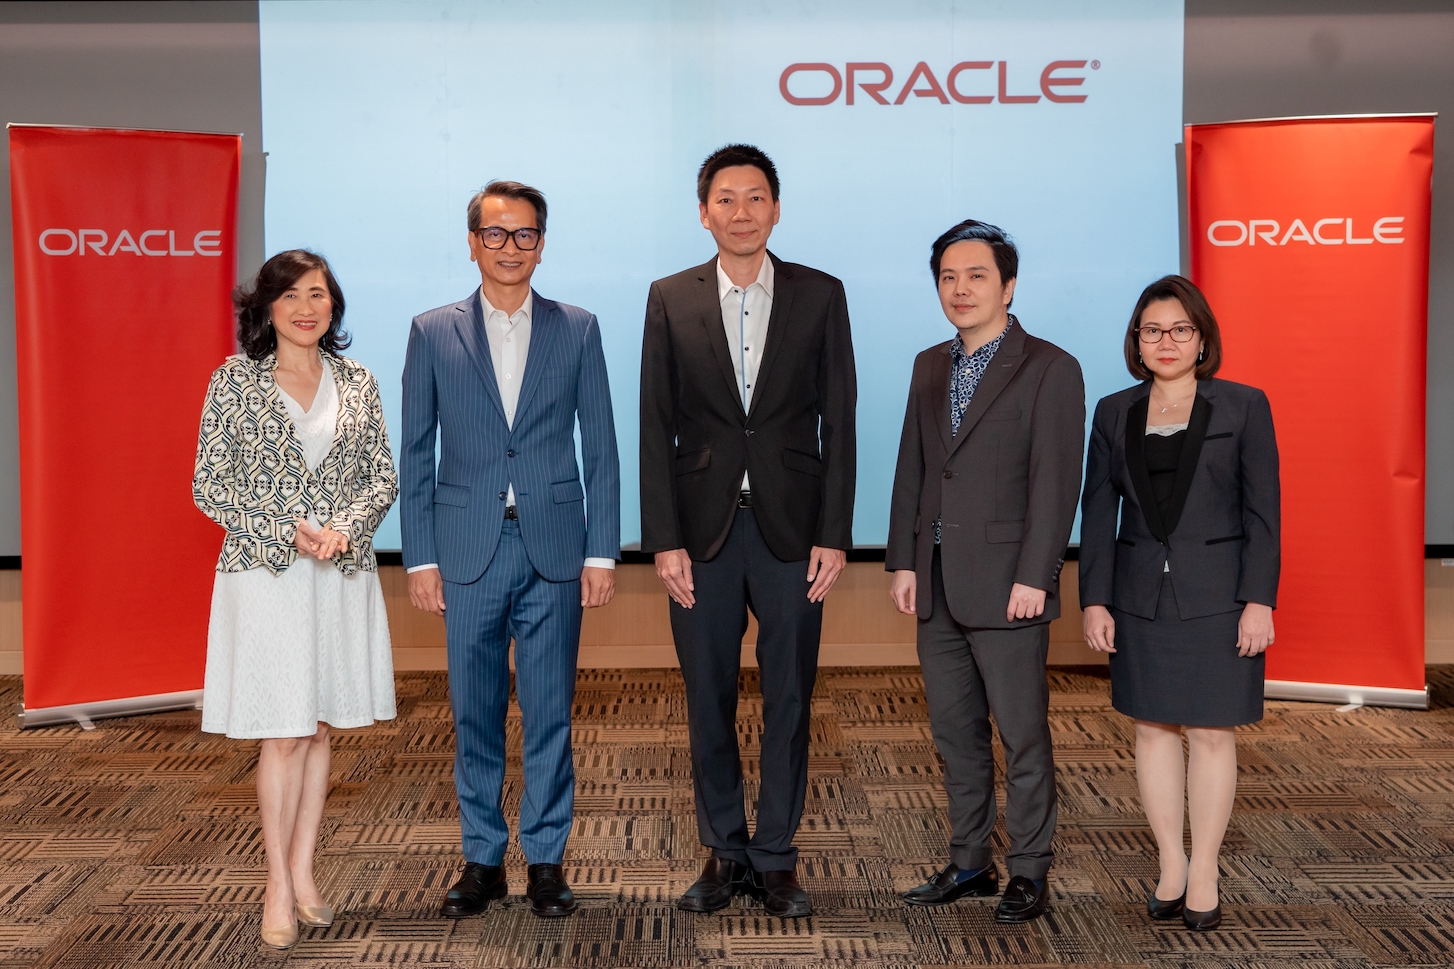 ธนาคารแห่งประเทศไทยเลือกใช้ระบบ Oracle ในการบริหารงานทรัพยากรบุคคลและพัฒนาองค์กร